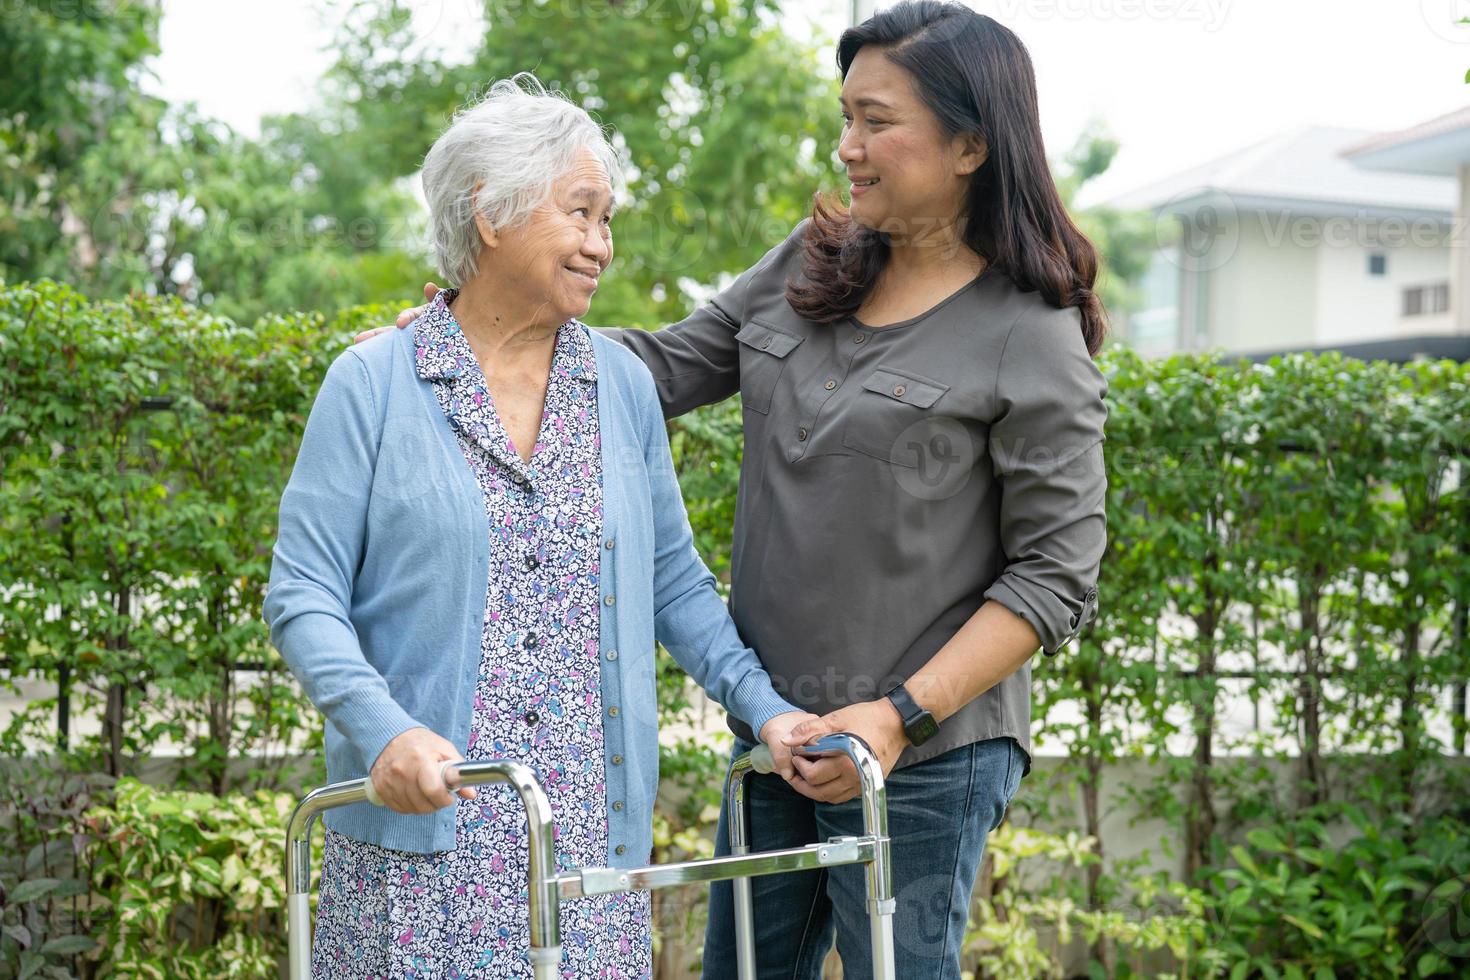 aider et soigner une vieille dame asiatique âgée ou âgée utilise un marcheur en bonne santé tout en marchant au parc pendant de joyeuses vacances fraîches. photo